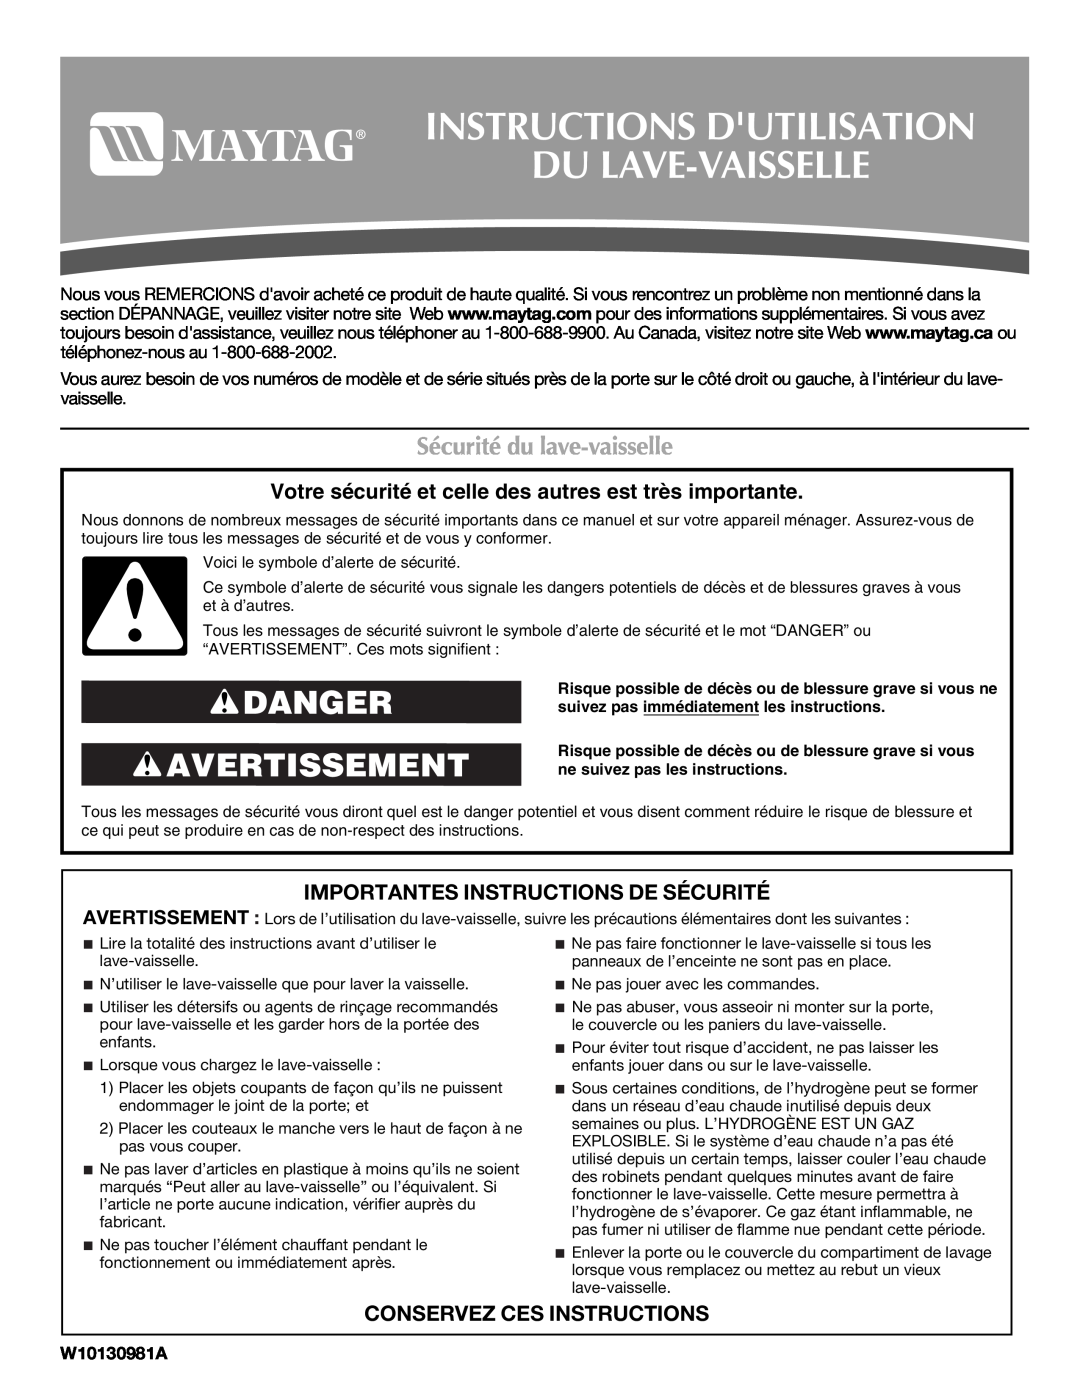 Maytag MDB4621AWW0 Instructions Dutilisation Du Lave-Vaisselle, Danger Avertissement, Sécurité du lave-vaisselle 